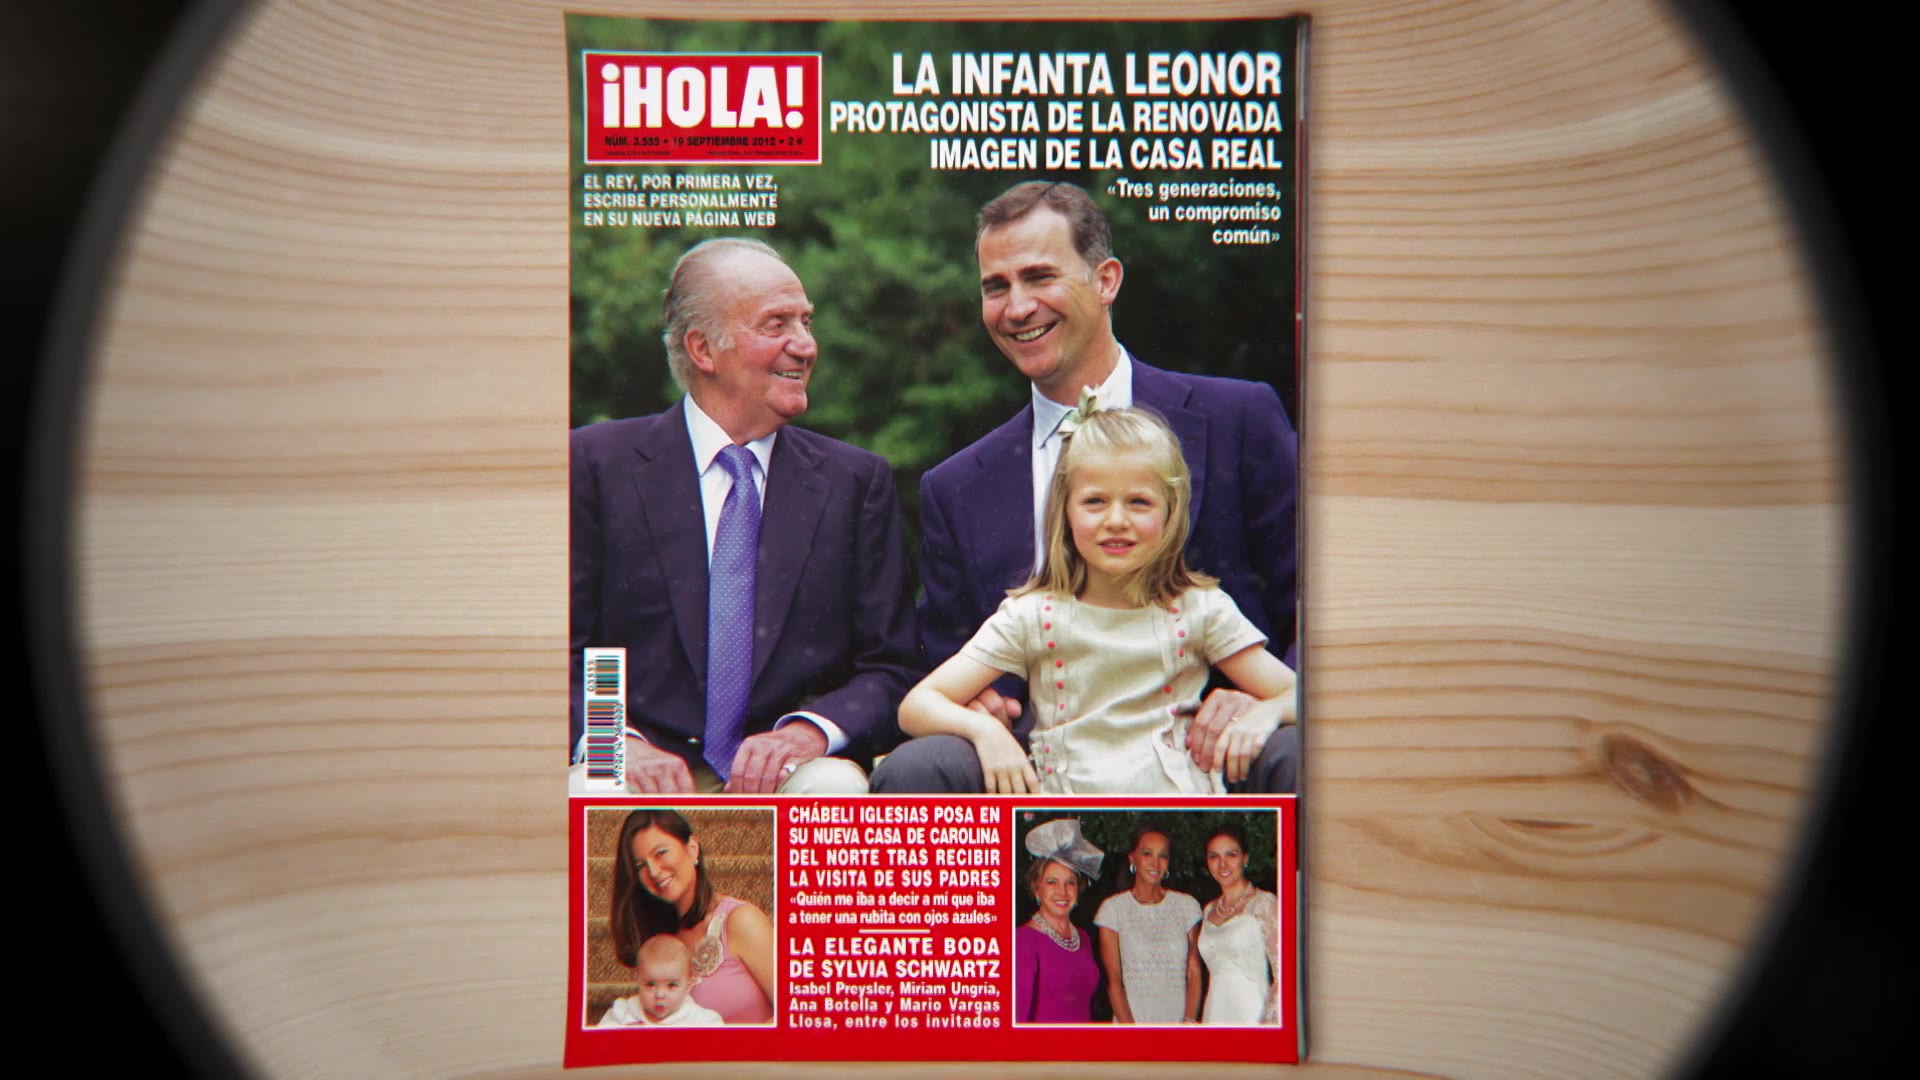 Juan Carlos I, 40 años de reinado portada a portada